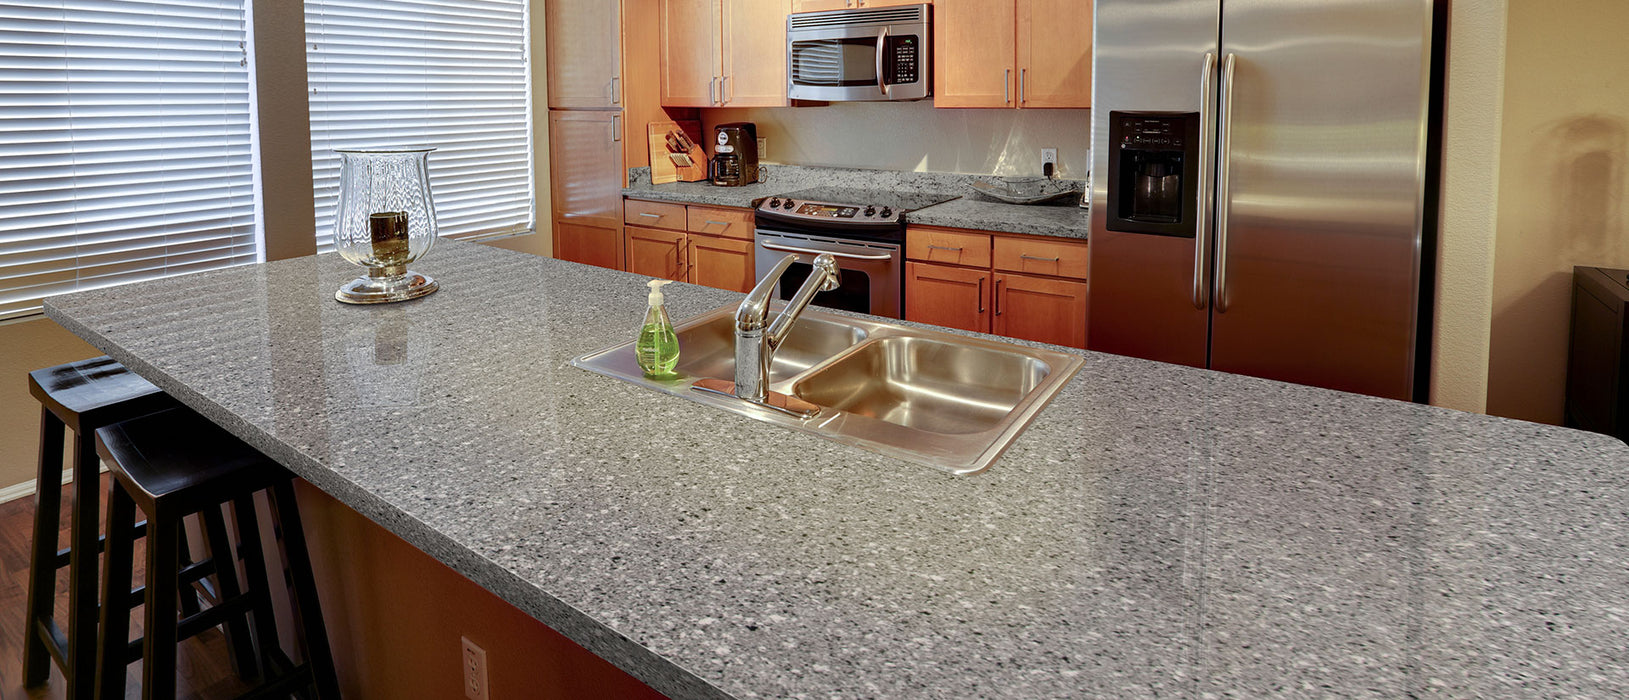 Pearl gray quartz countertop kitchen scene